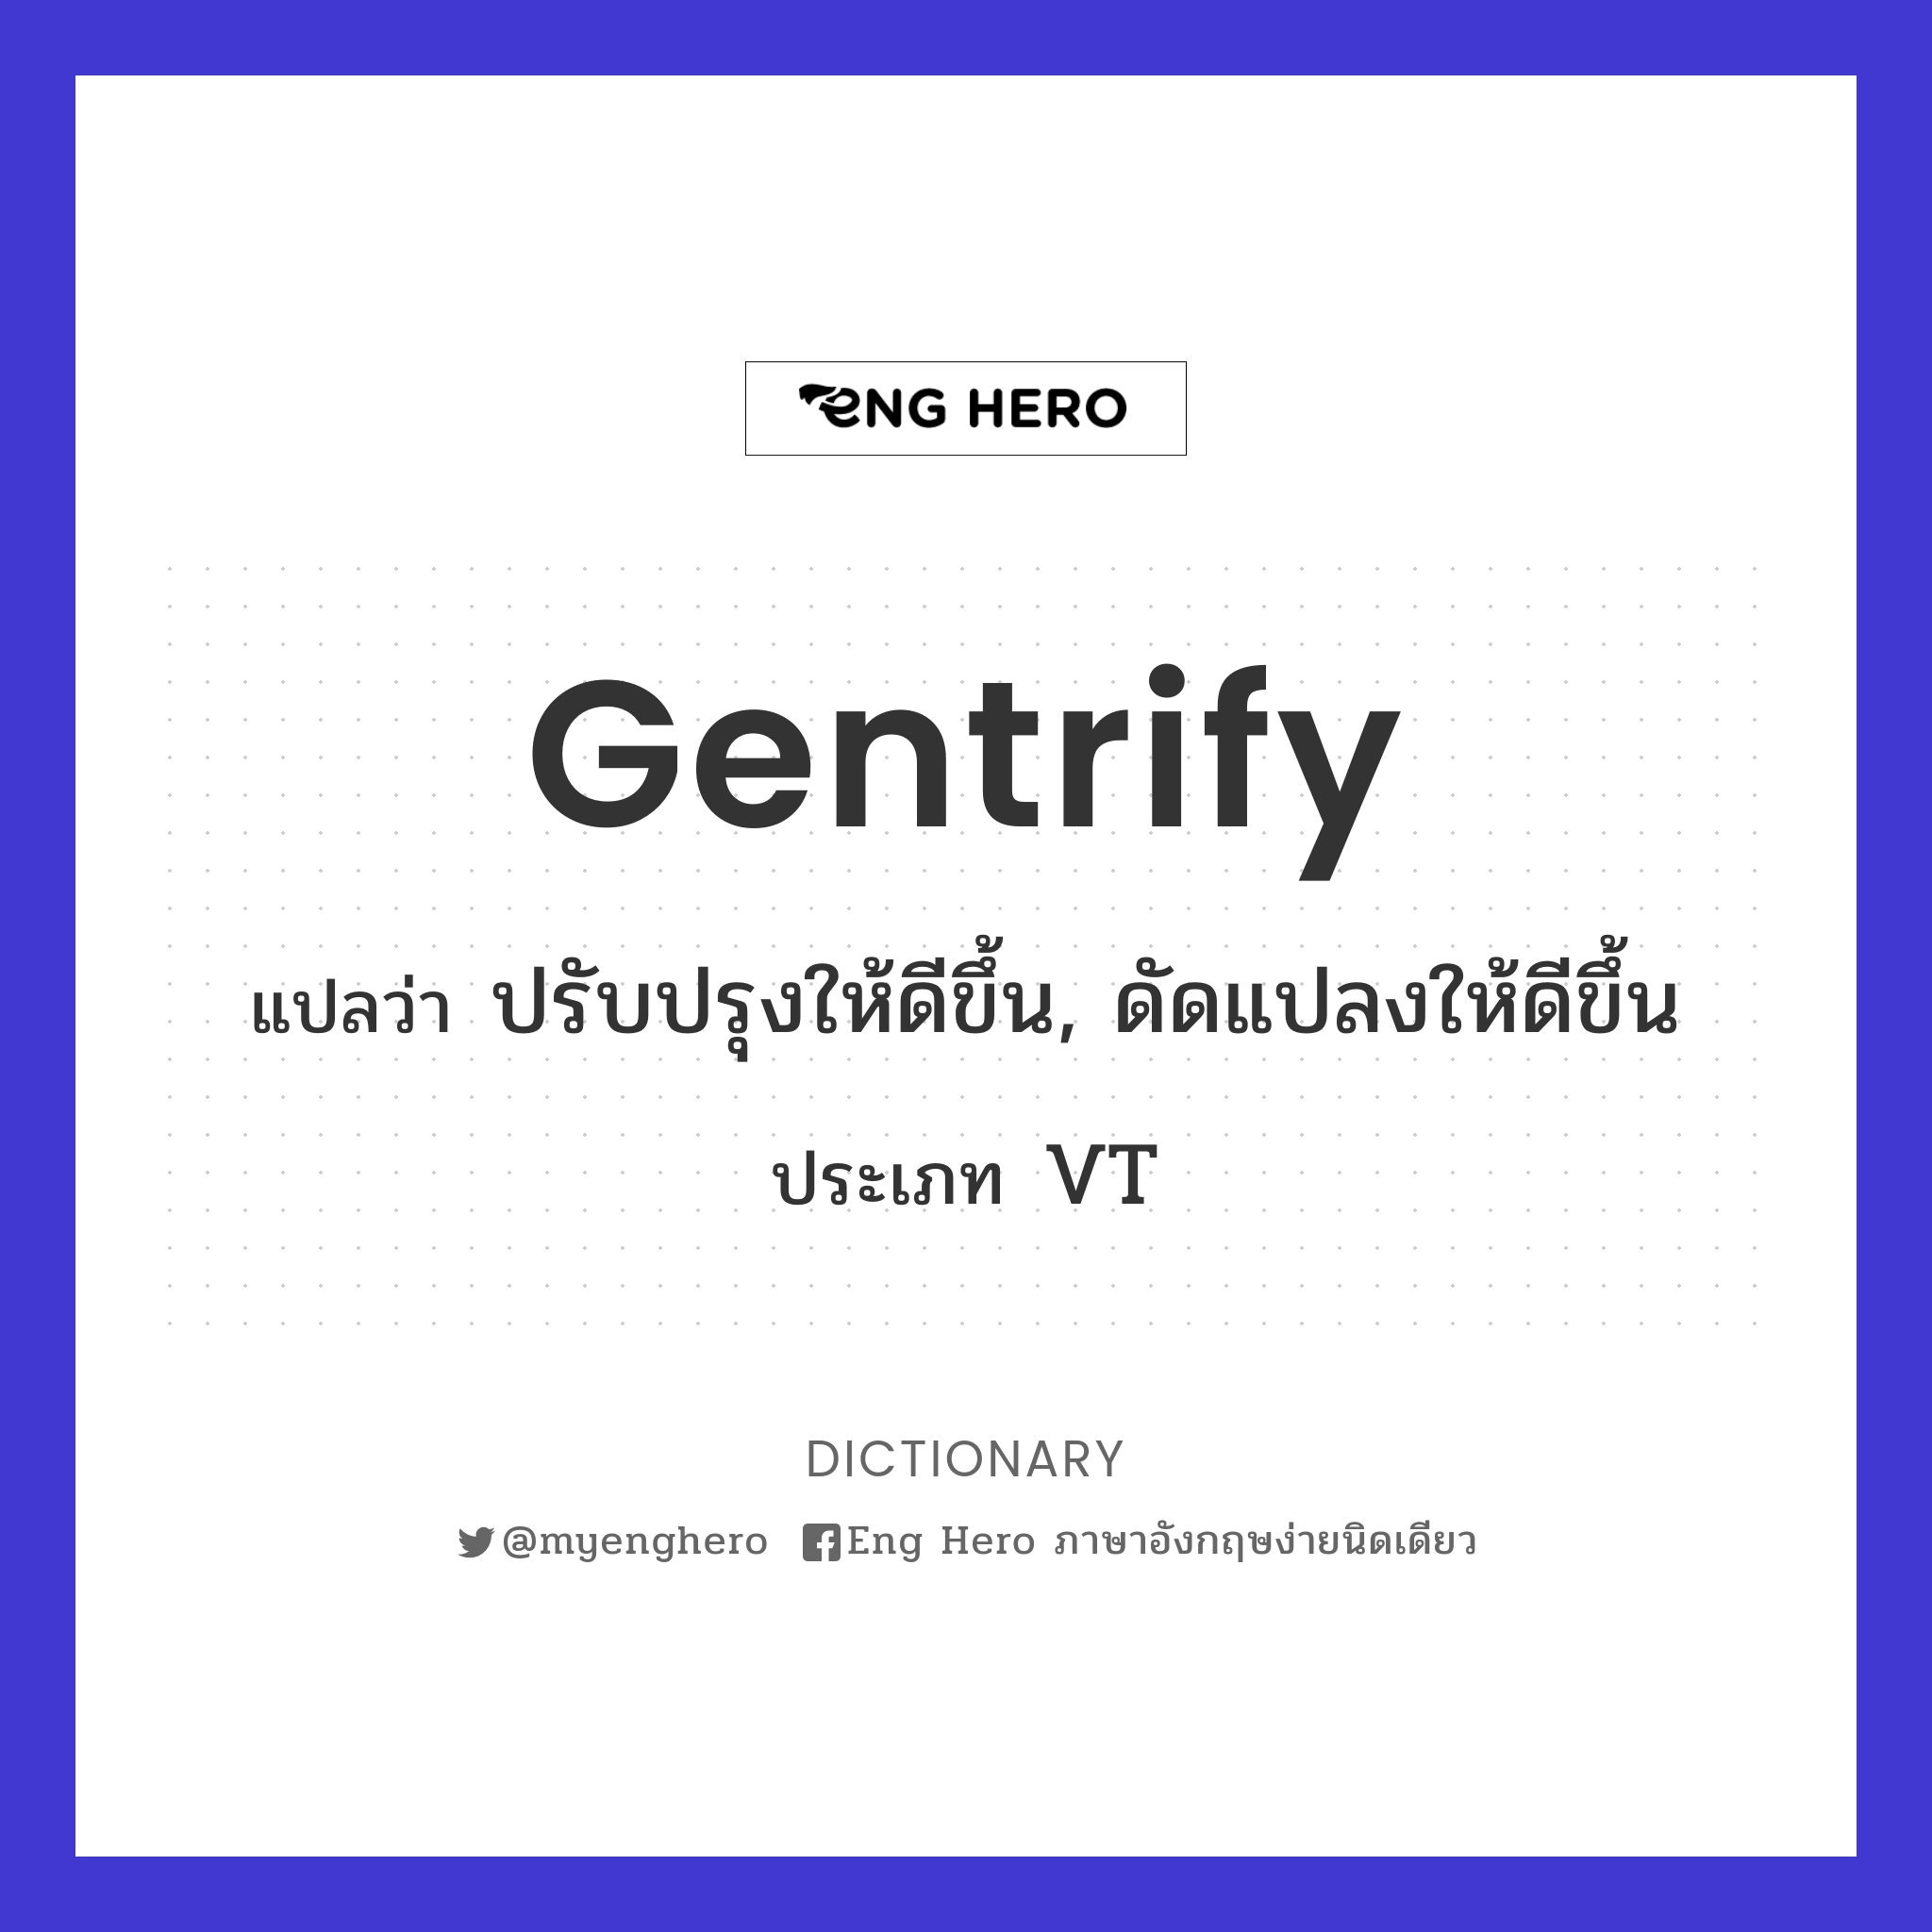 gentrify